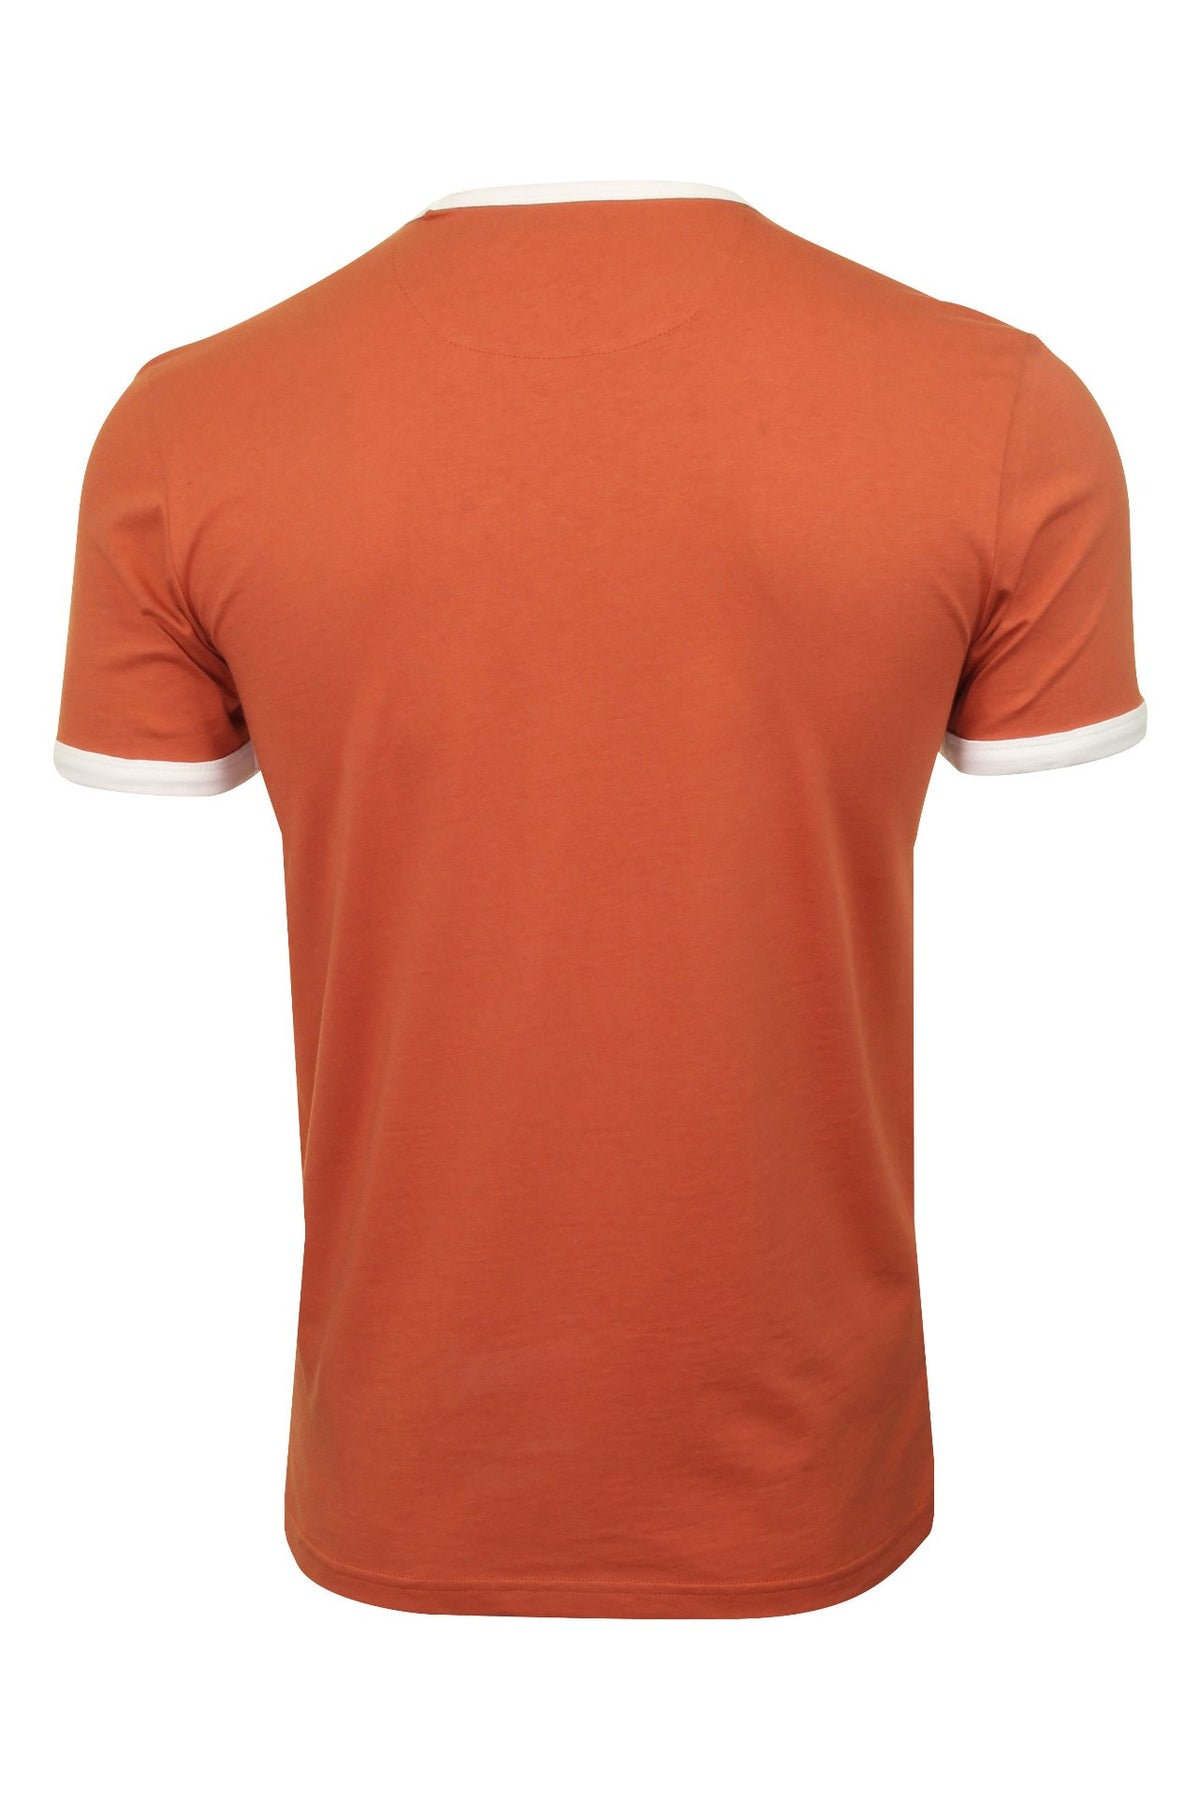 Farah Mens Crew Neck T-Shirt 'Groves Ringer Tee' - Short Sleeved, 03, F4KS60H9GP, Jalapeno